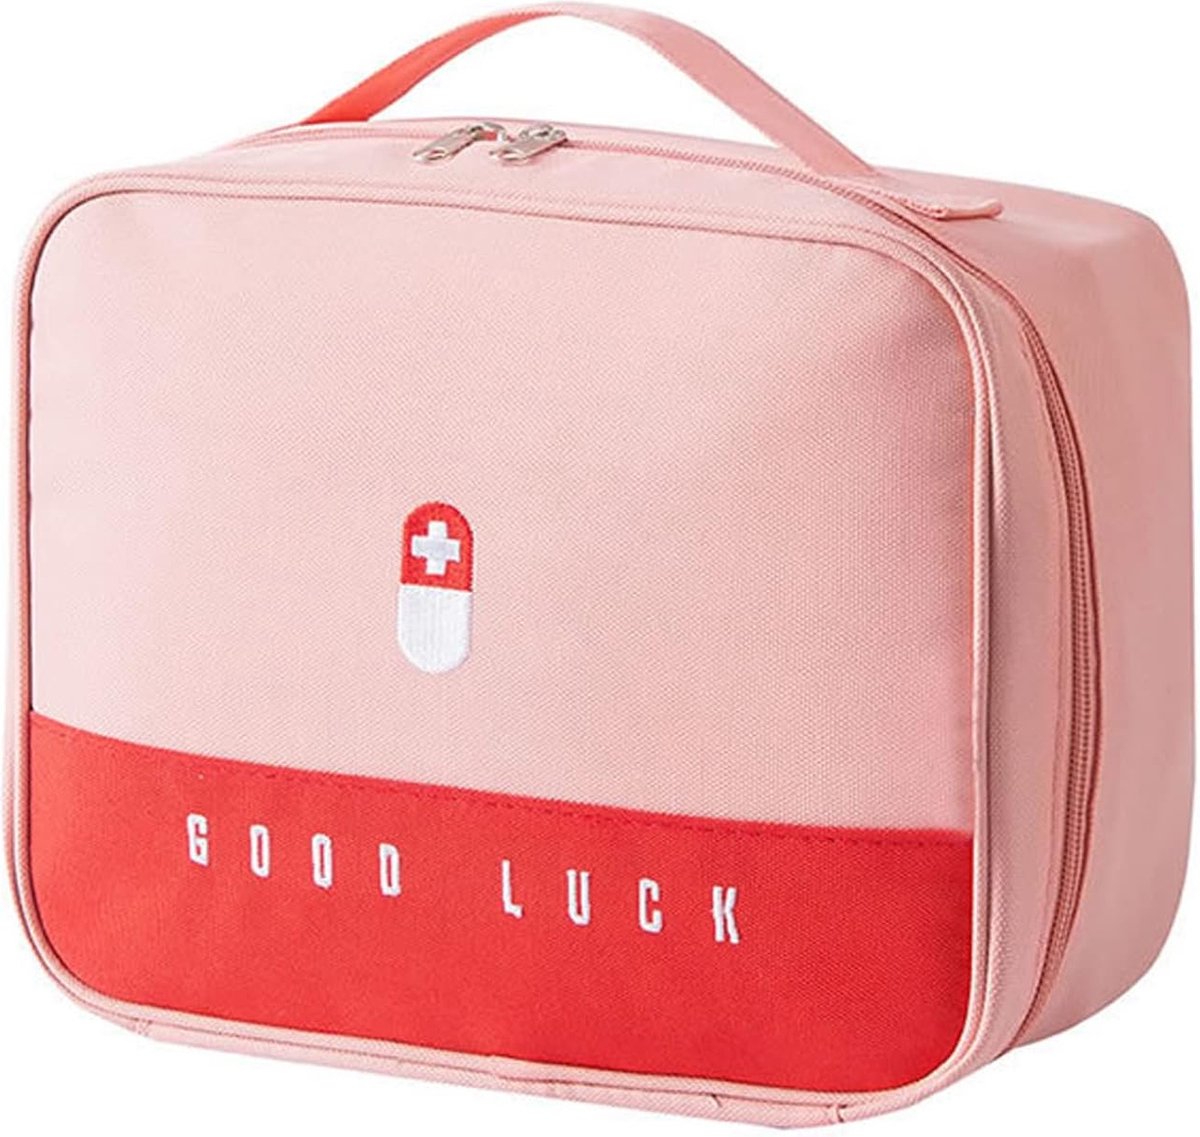 Medicijntas reizen - First Aid Kits - Behandeling Bag voor Home Office School Outdoor Camping Reisapotheek Tas (Roze)